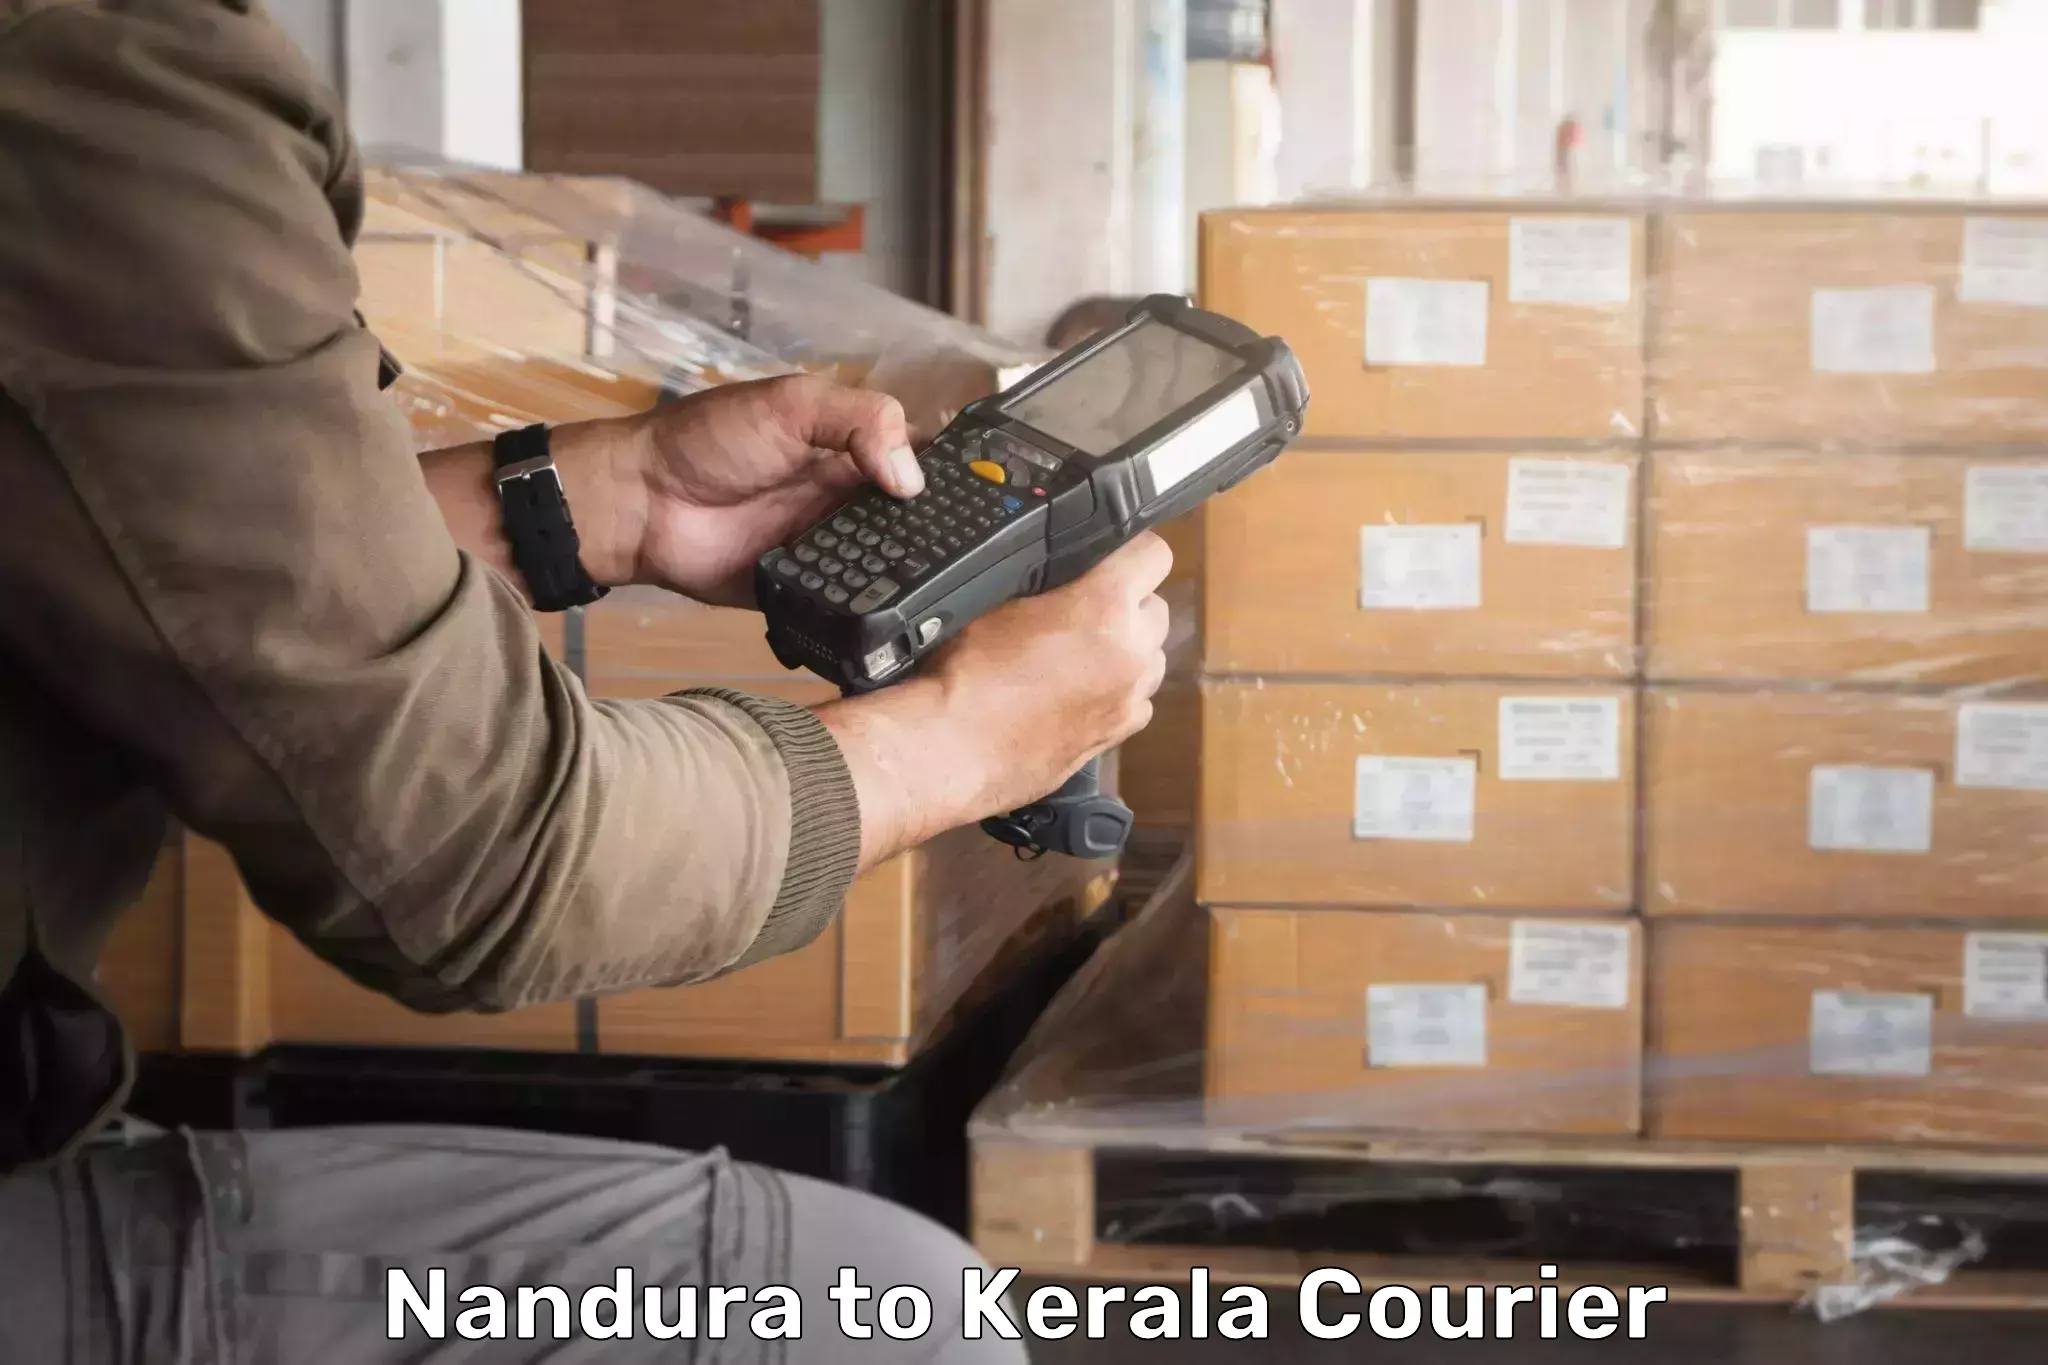 Personal courier services Nandura to Thiruvananthapuram